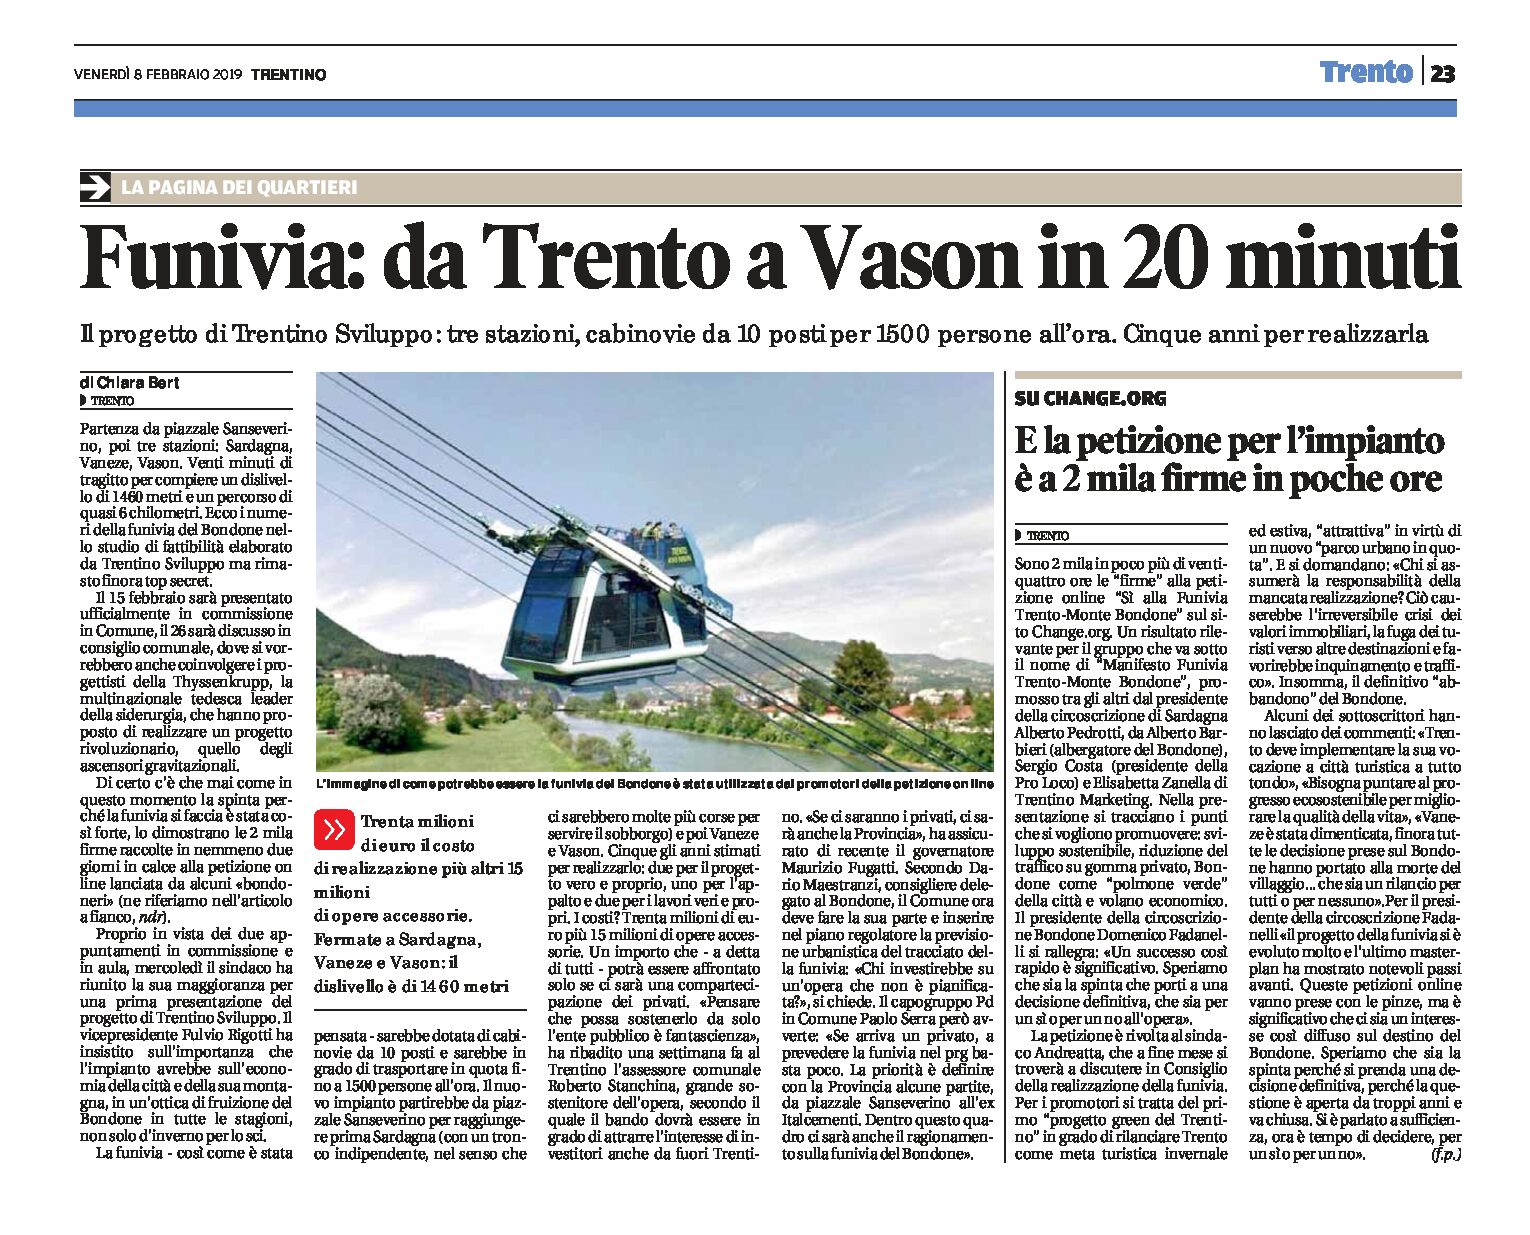 Funivia Trento-Bondone: da Trento a Vason in 20 minuti. Progetto di Trentino Sviluppo